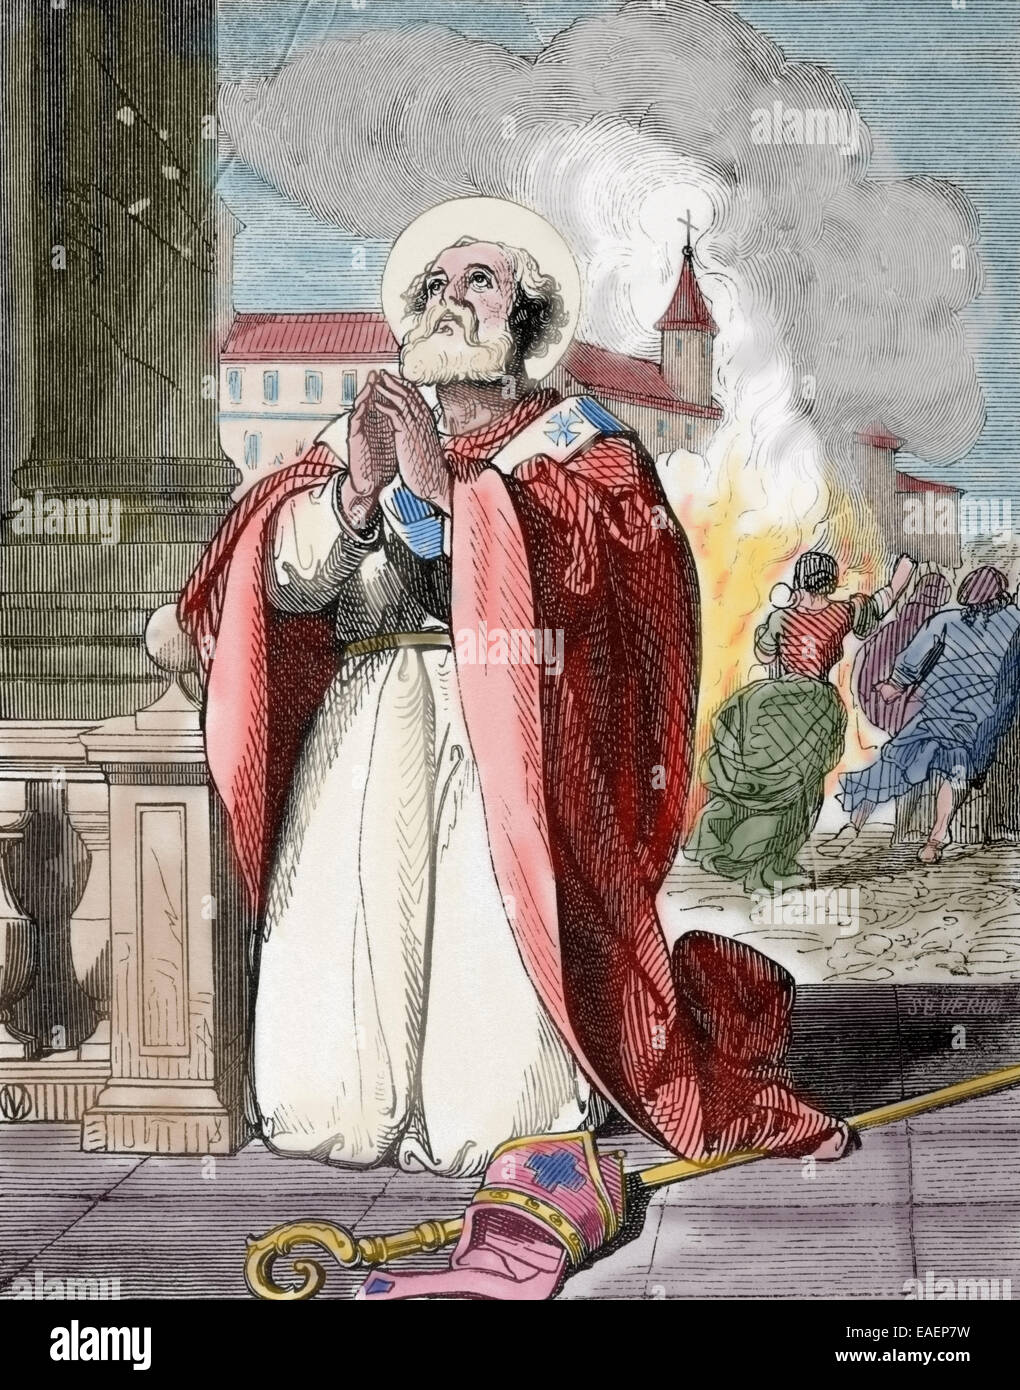 Saint Mamertus (mort C. 475). Évêque de Vienne en Gaule. Gravure de Severini. 19e siècle. De couleur. Banque D'Images